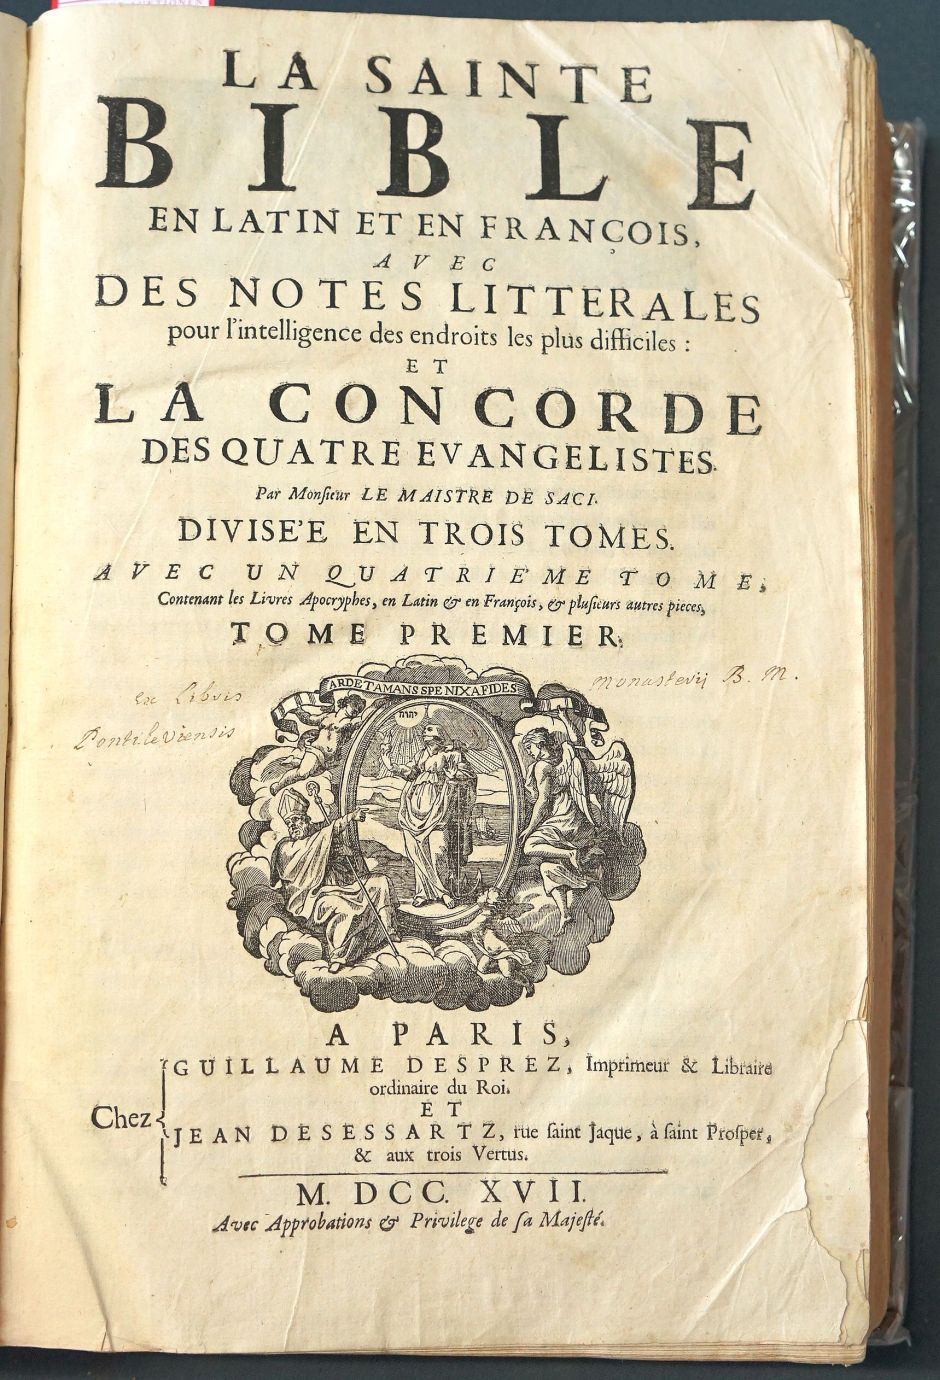 Lot 1238, Auction  115, Biblia latina-gallica, La sainte bible en latin et en fançois